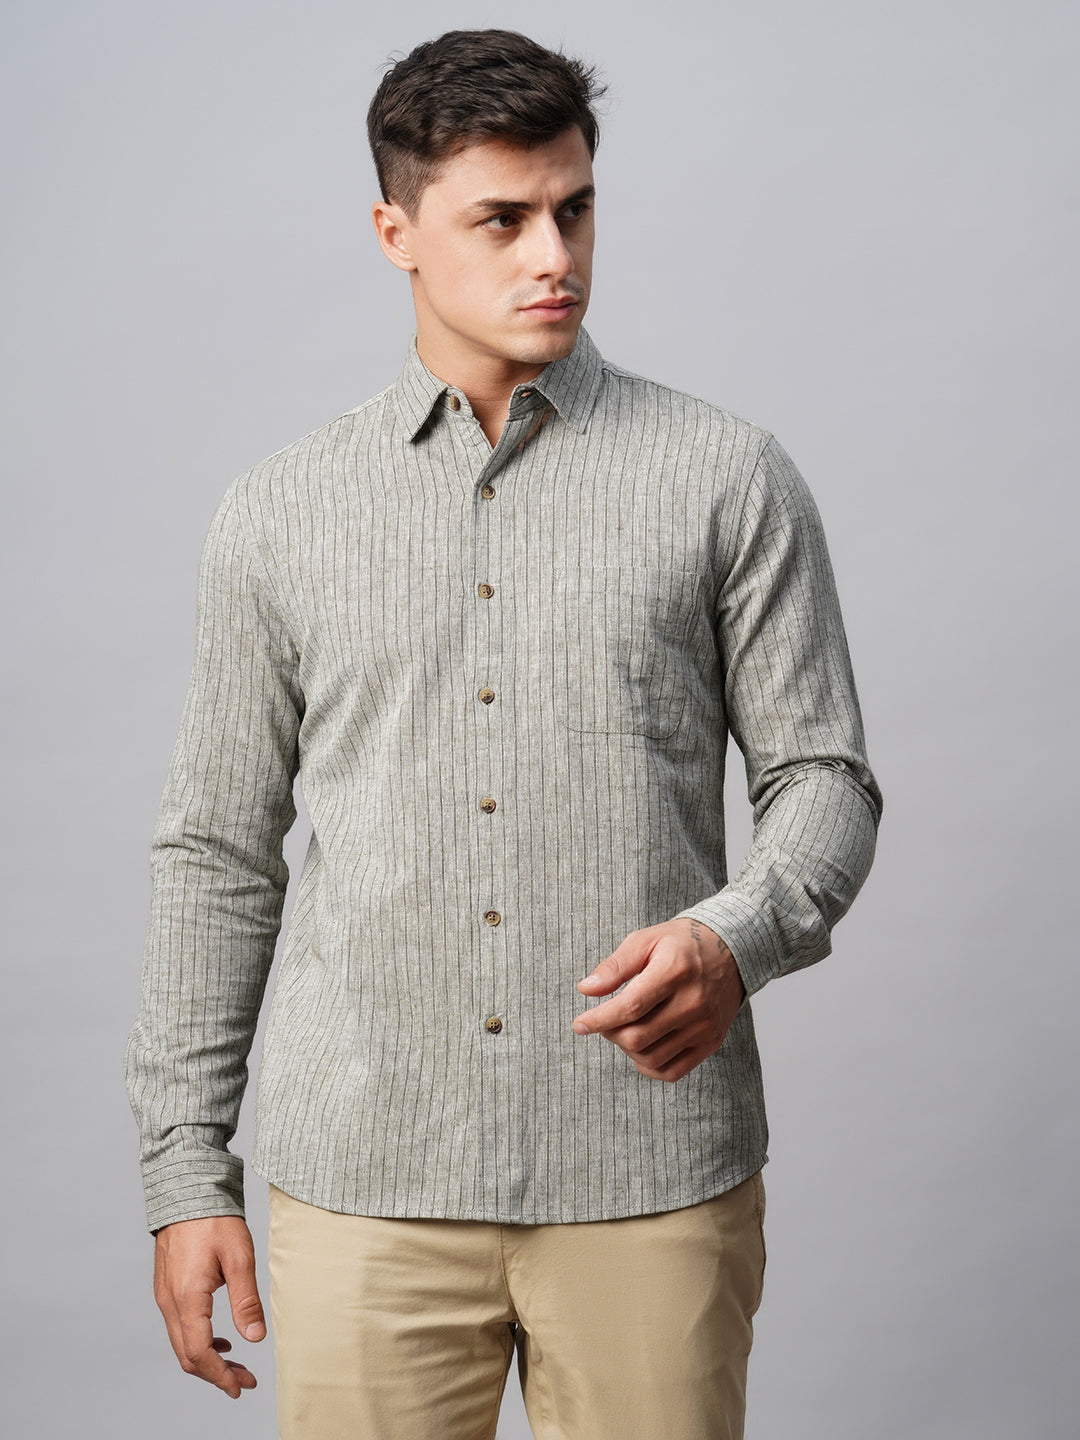 Cotton/Linen Men's Linen Shirt at Rs 500 in Tiruppur